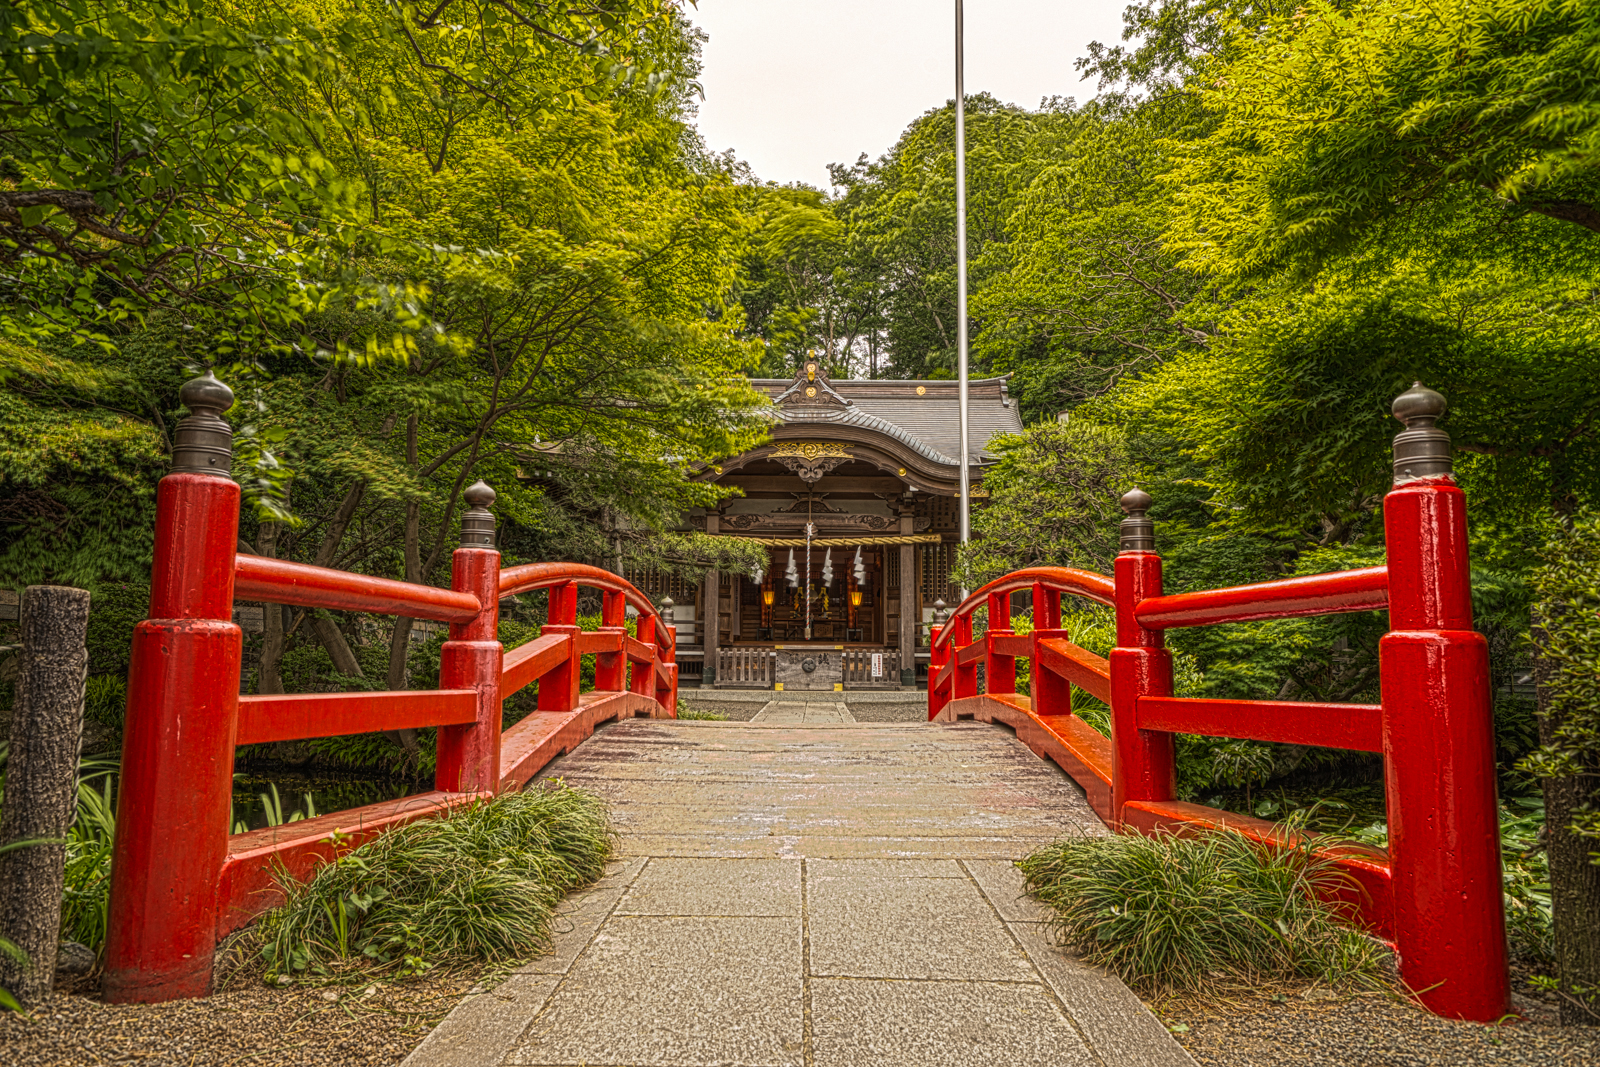 貫井神社、赤い神橋と本殿の写真